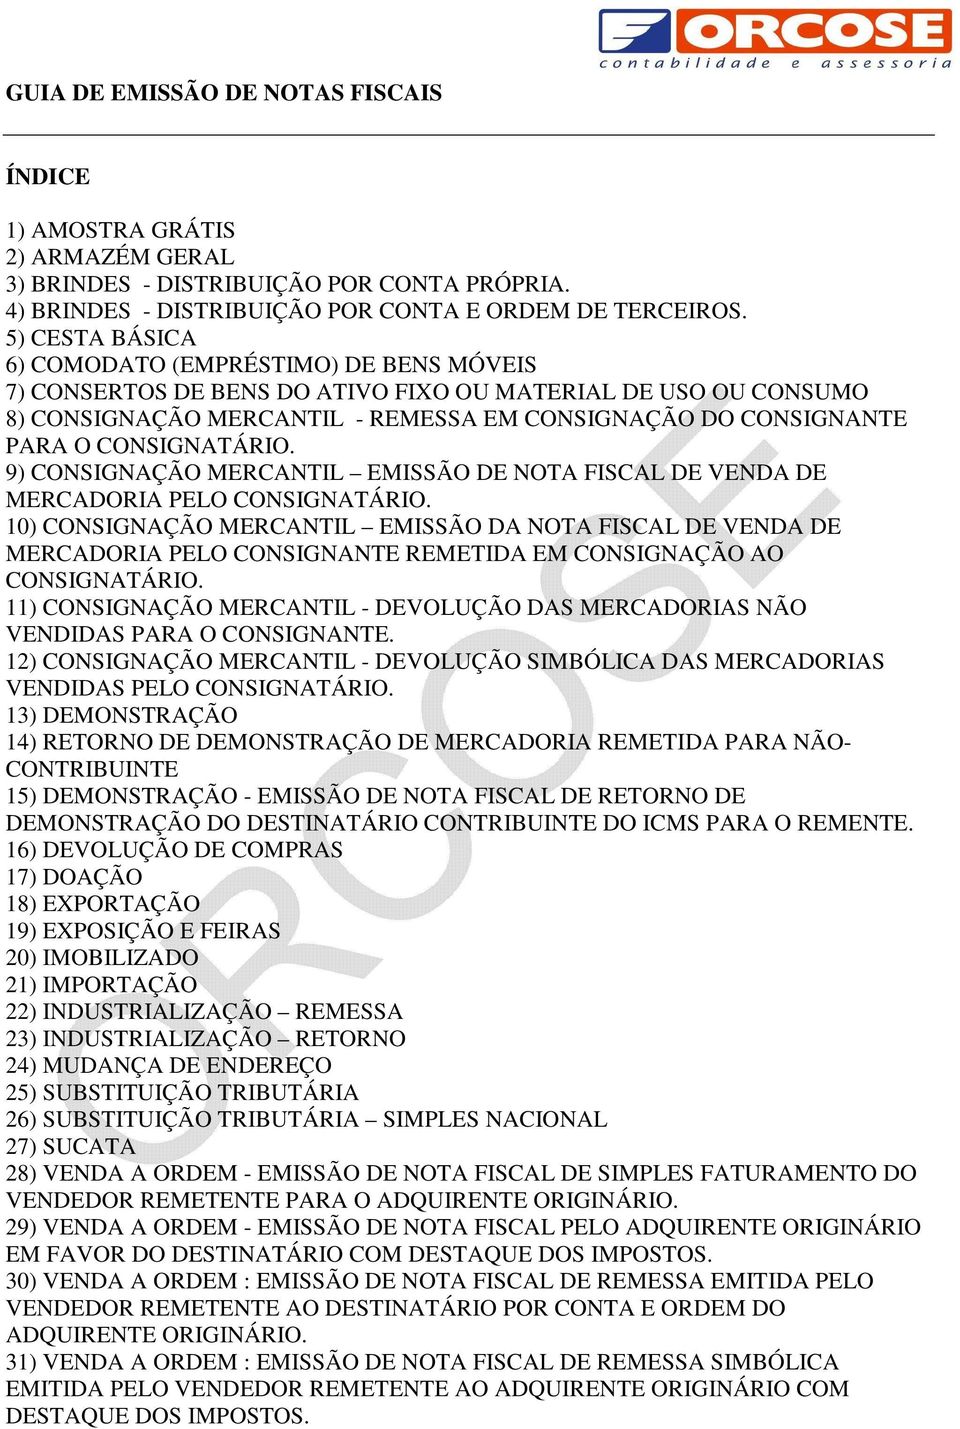 9) CONSIGNAÇÃO MERCANTIL EMISSÃO NOTA FISCAL VENDA MERCADORIA PELO CONSIGNATÁRIO.